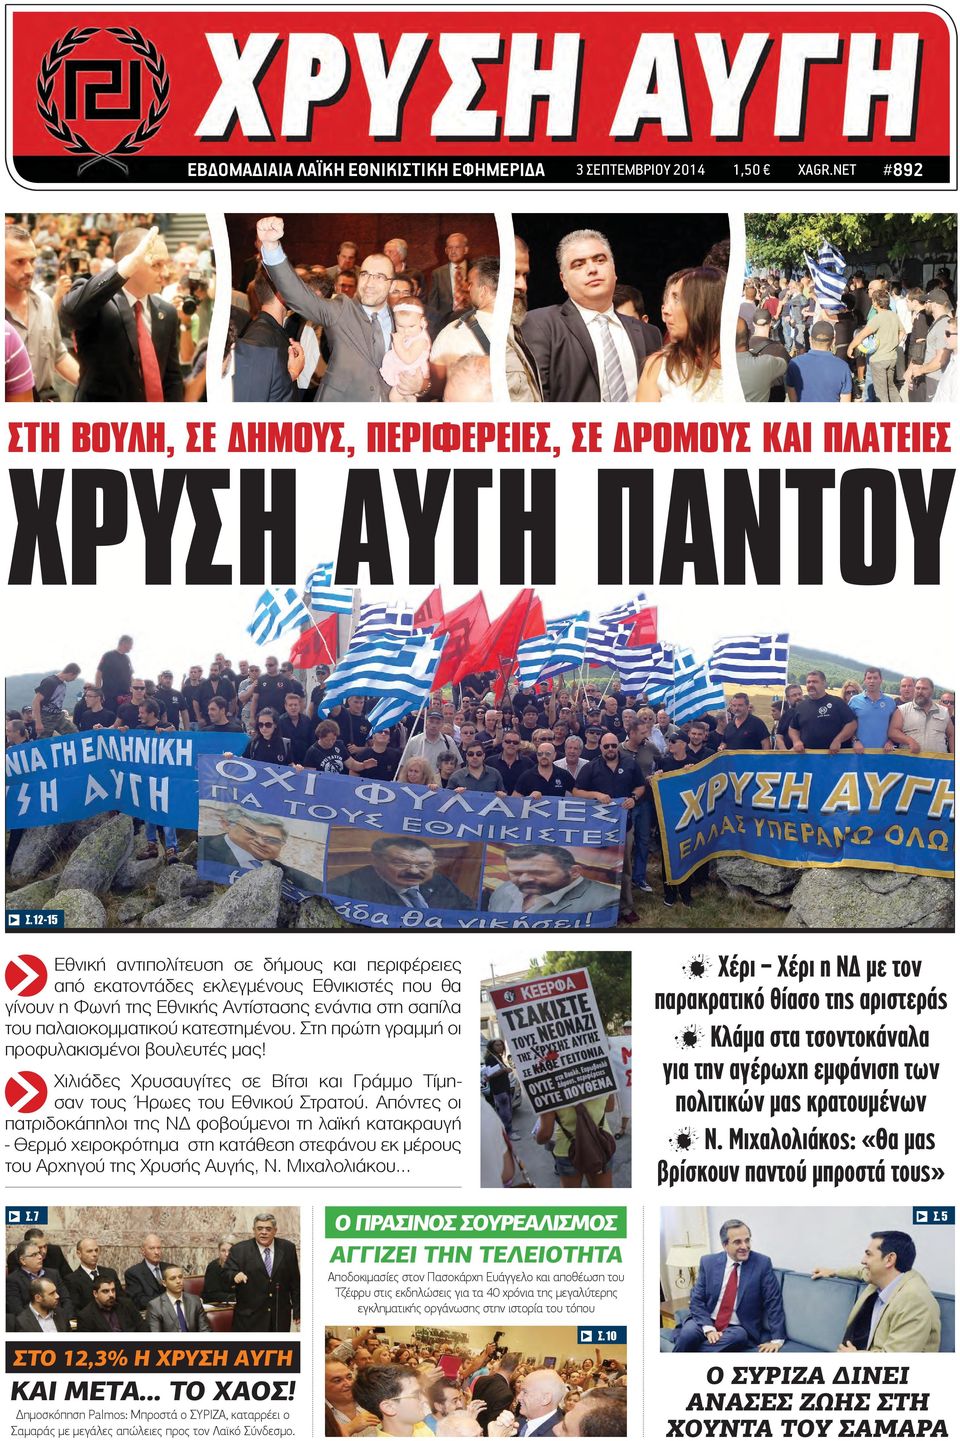 Μιχαλολιάκος: «Θα μας βρίσκουν παντού μπροστά τους» c Εθνική αντιπολίτευση σε δήμους και περιφέρειες από εκατοντάδες εκλεγμένους Εθνικιστές που θα γίνουν η Φωνή της Εθνικής Αντίστασης ενάντια στη